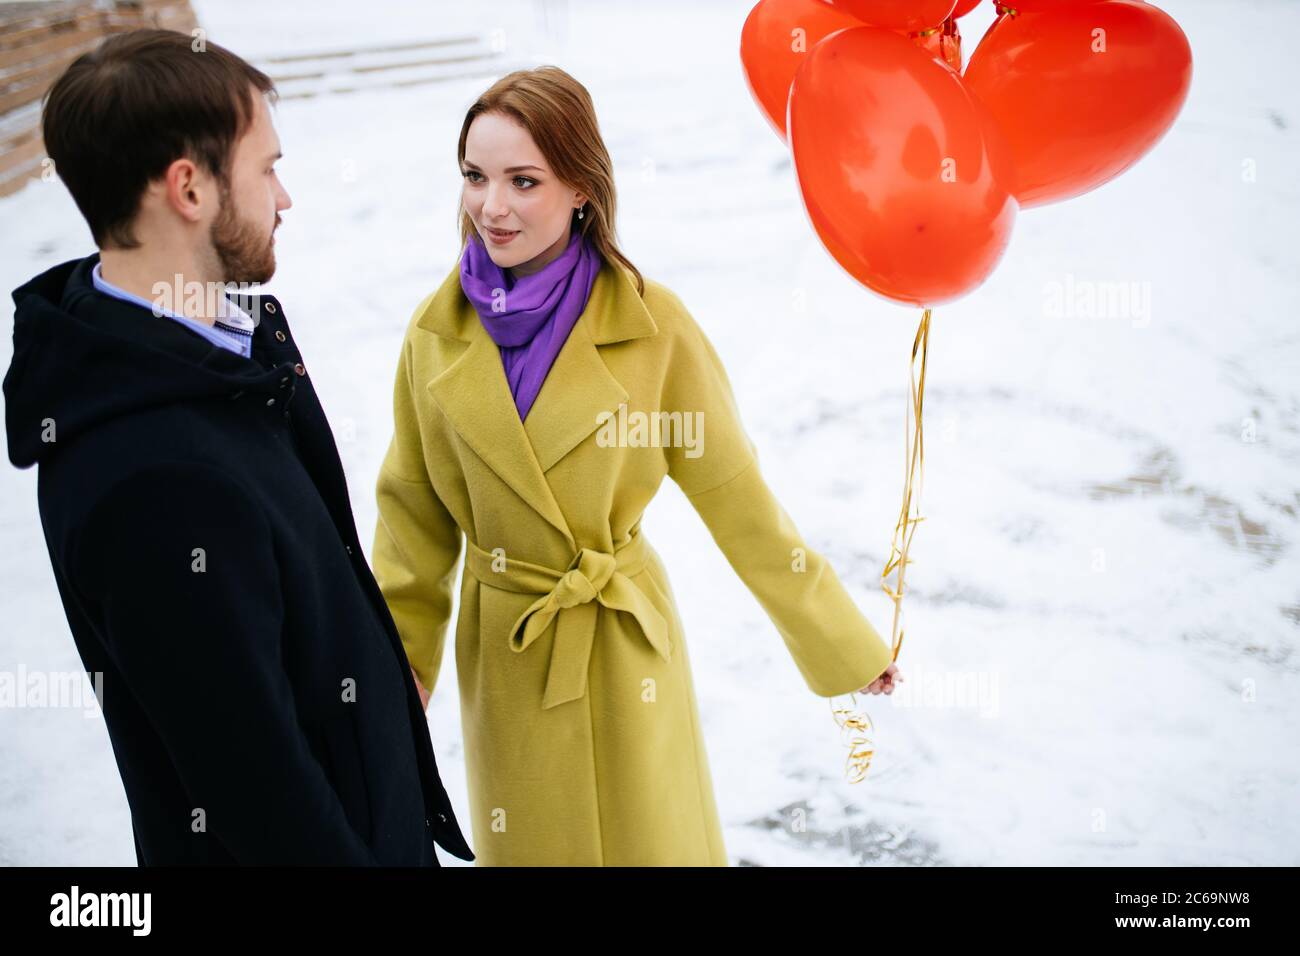 Glücklich kaukasischen Paar verbringen Freizeit zusammen im Freien, Mann und Frau in Mänteln, mit roten Luftballons in den Händen. Liebe, Beziehungen Konzept Stockfoto